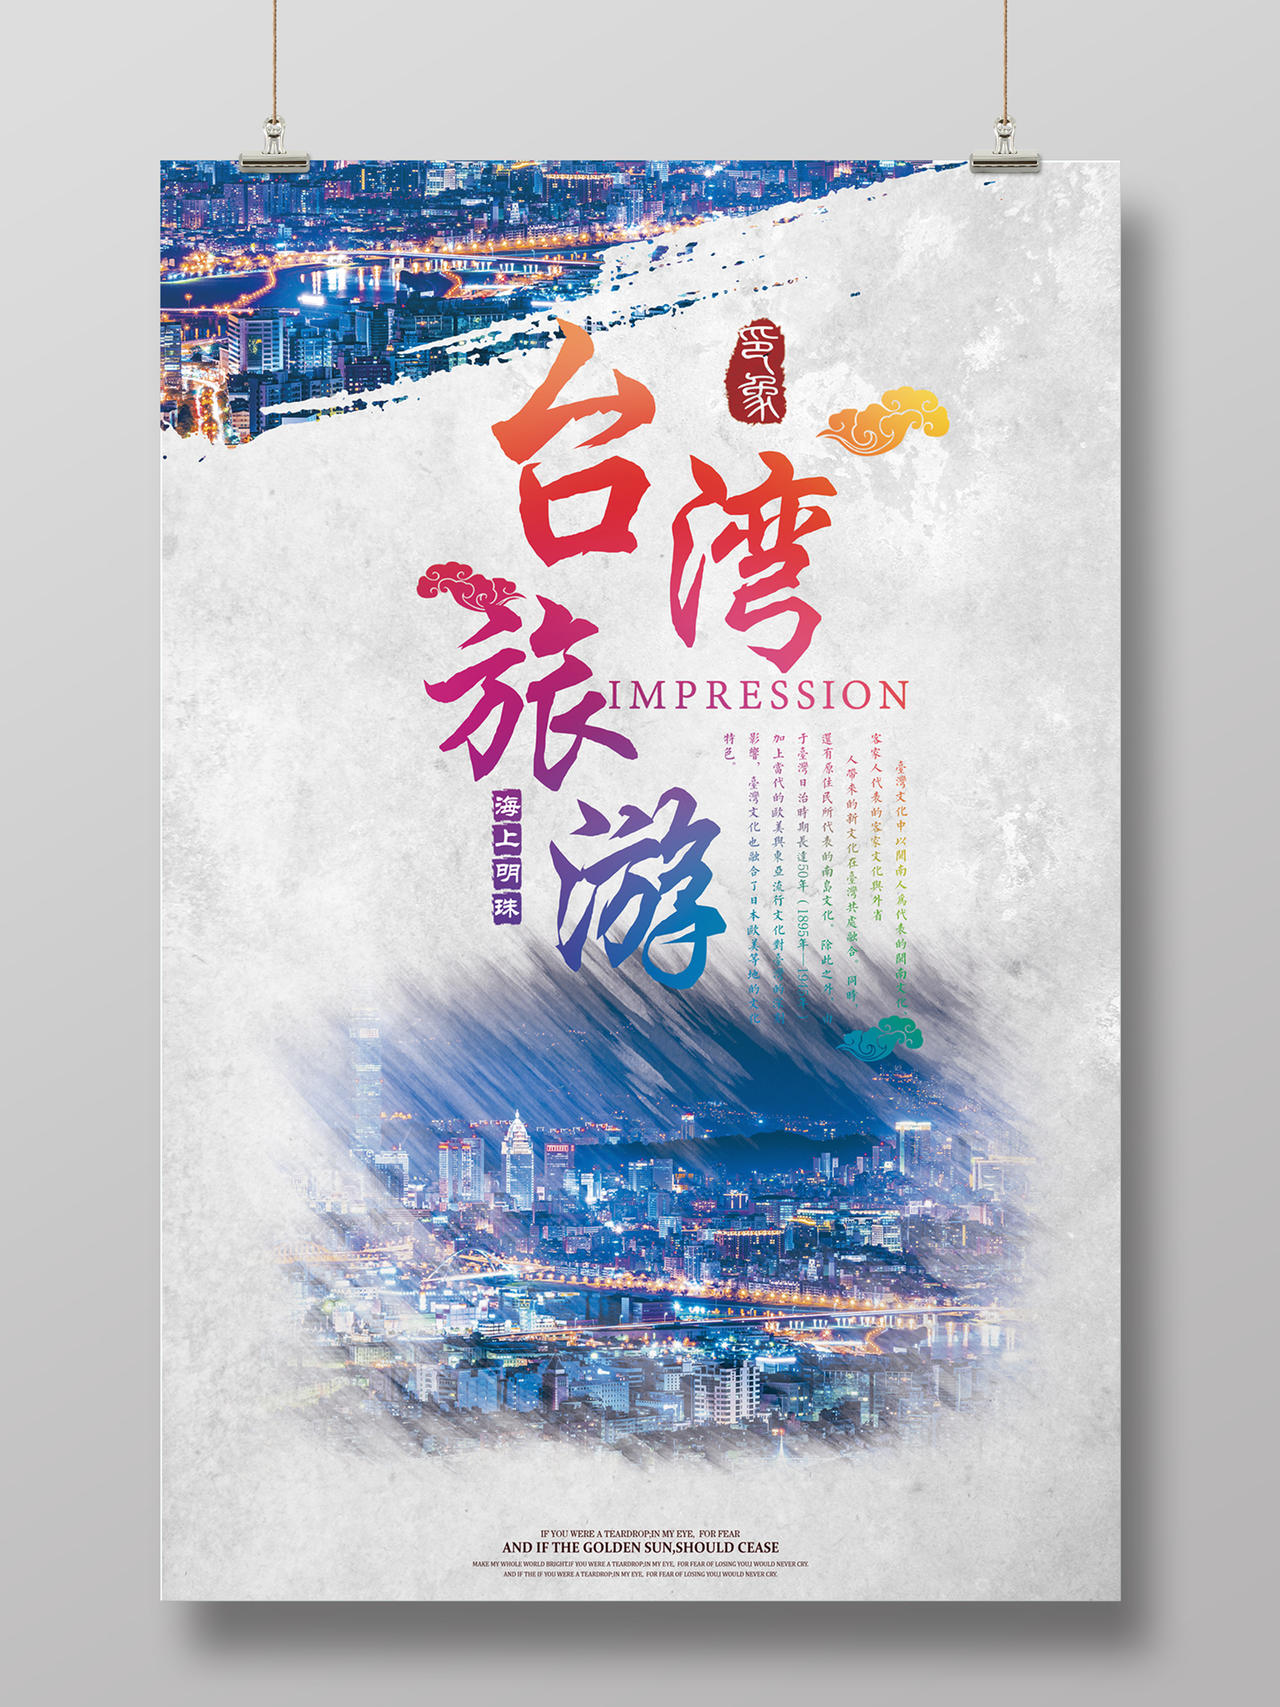 台湾旅游海报设计